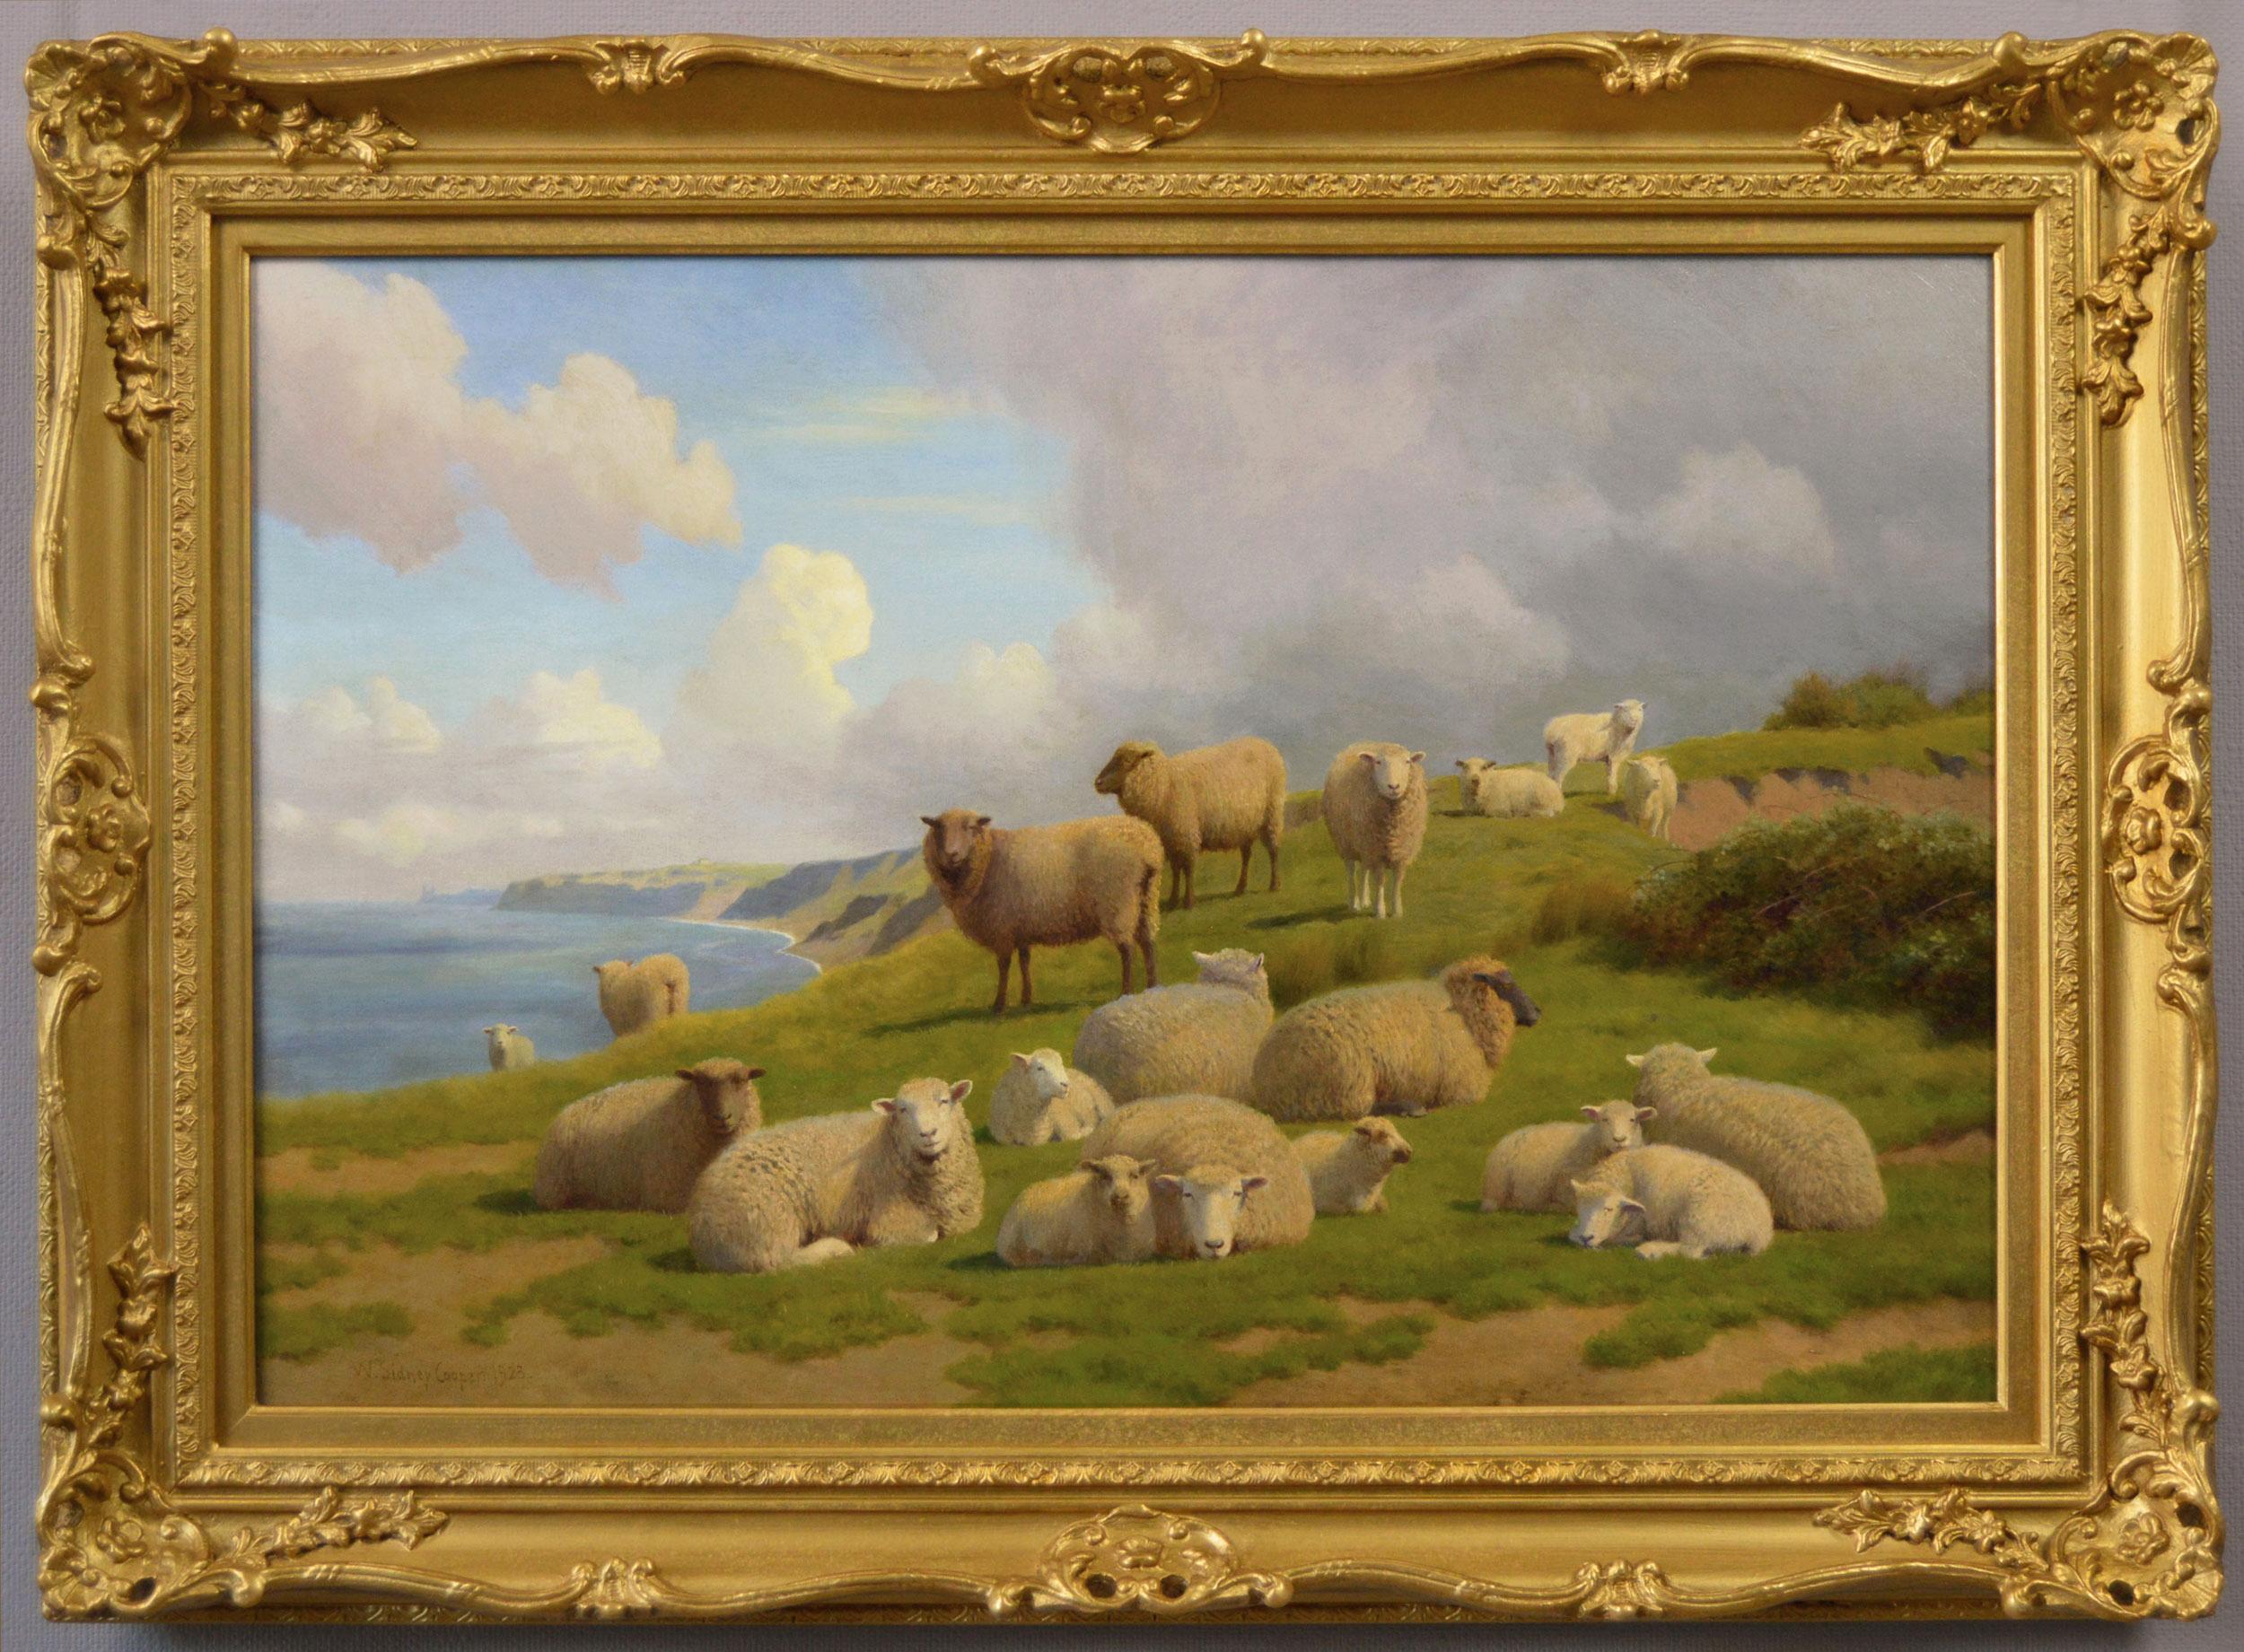 Peinture à l'huile du 19e siècle représentant des moutons sur une falaise près de la baie de Herne, Kent